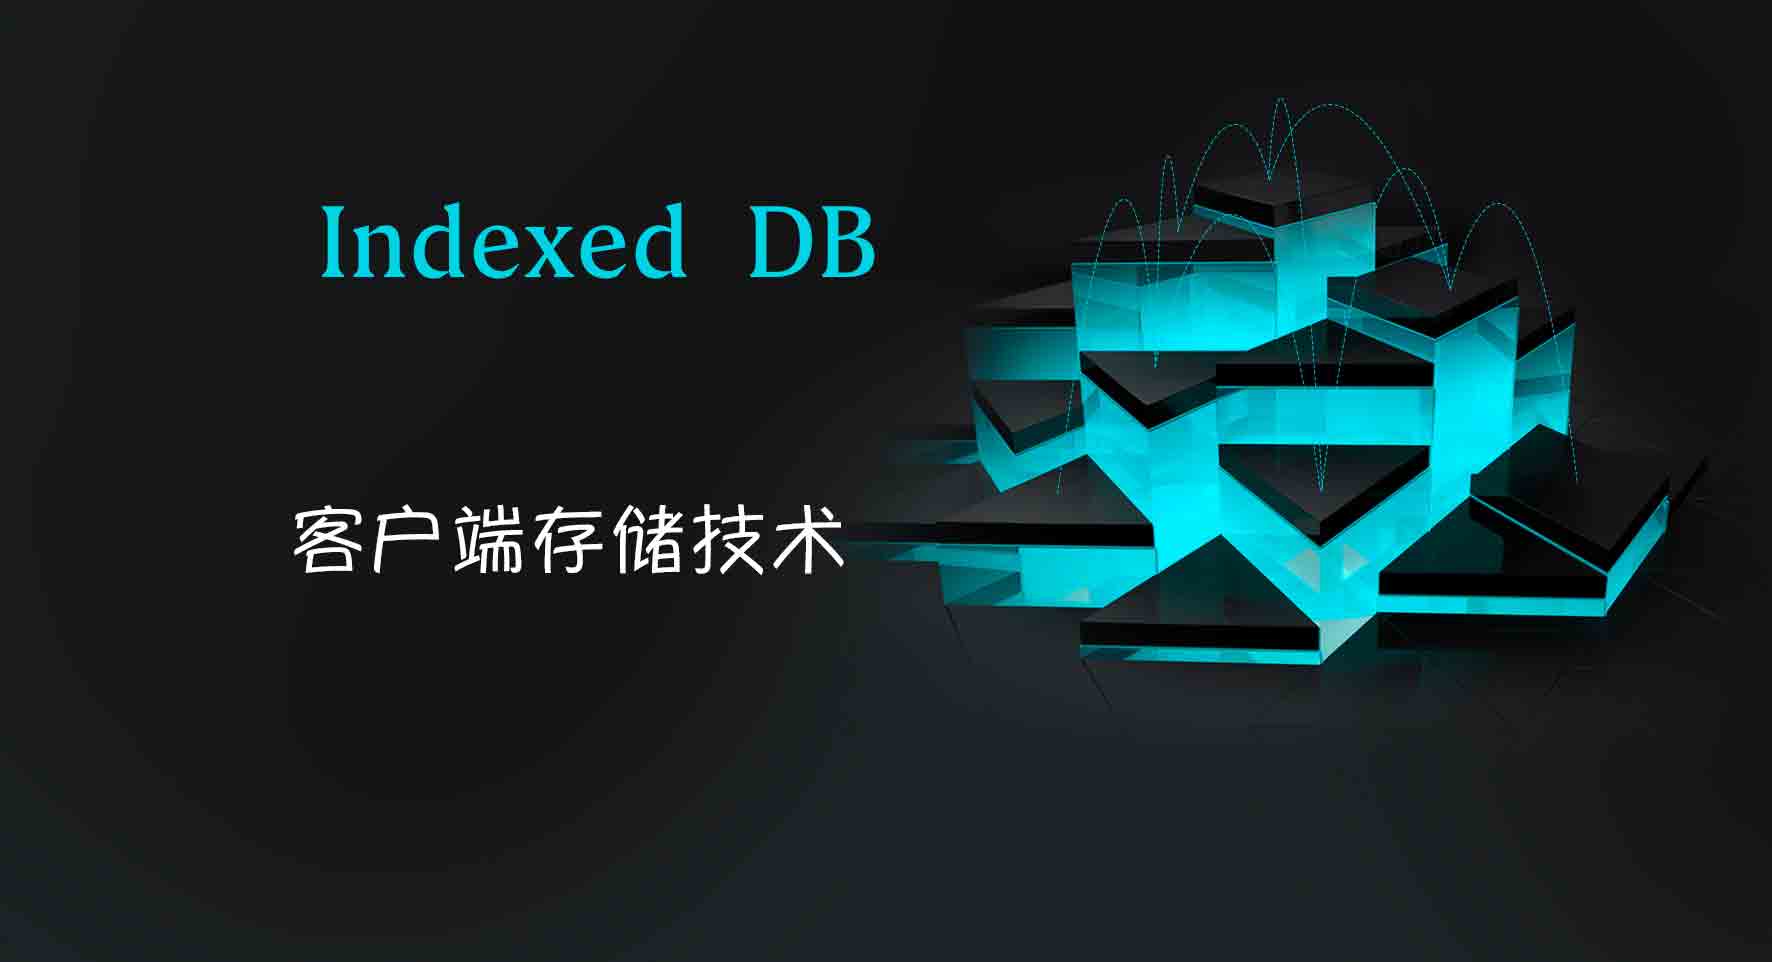 IndexedDB 用户本地数据